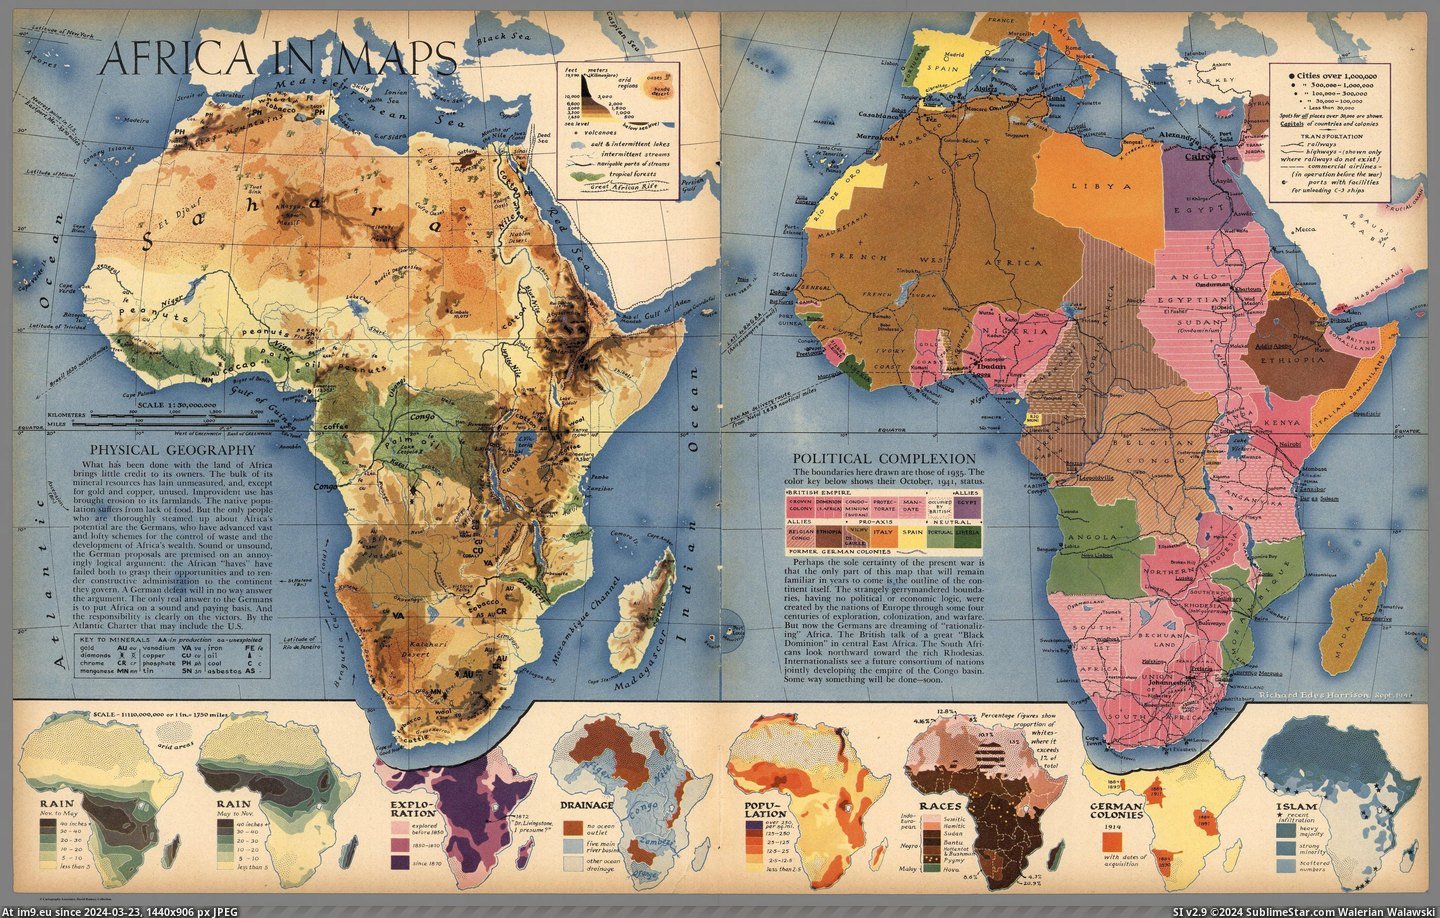 #Africa #Maps #Harrison #Sept #Richard [Mapporn] Africa in Maps, made by Richard Edes Harrison, Sept. 1941 [5089x3214] Pic. (Bild von album My r/MAPS favs))